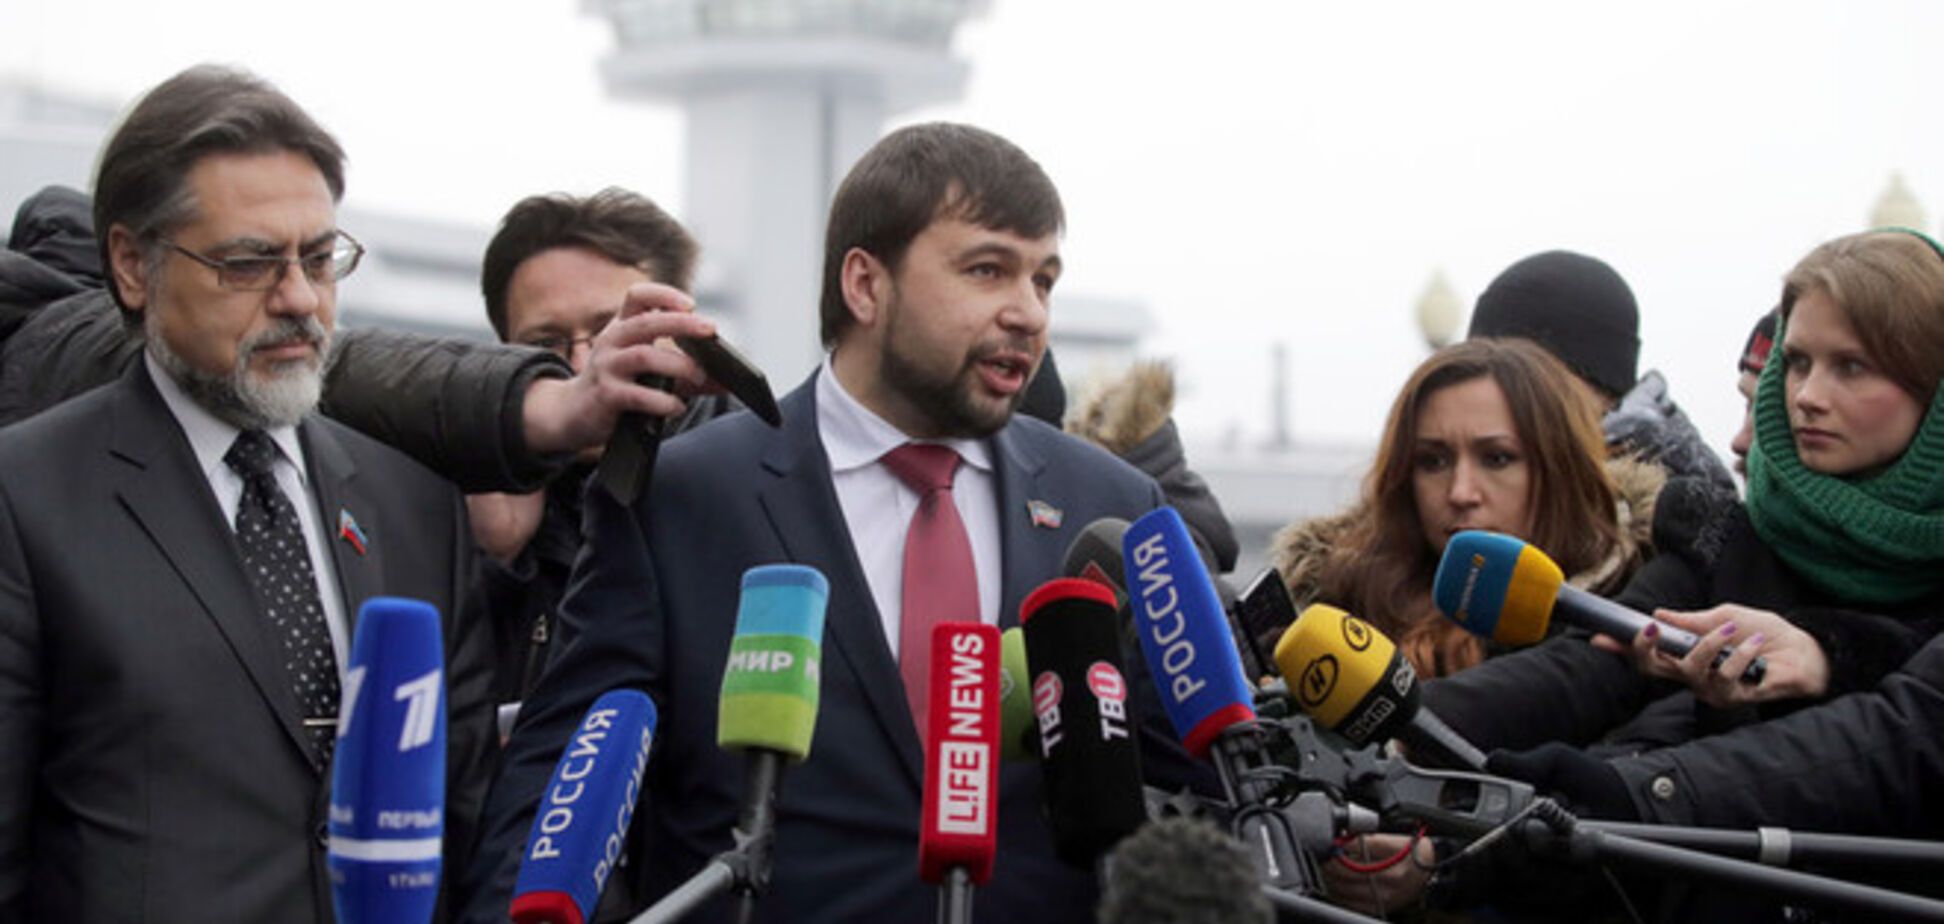 Участники контактной группы прибыли в Минск на переговоры по Донбассу